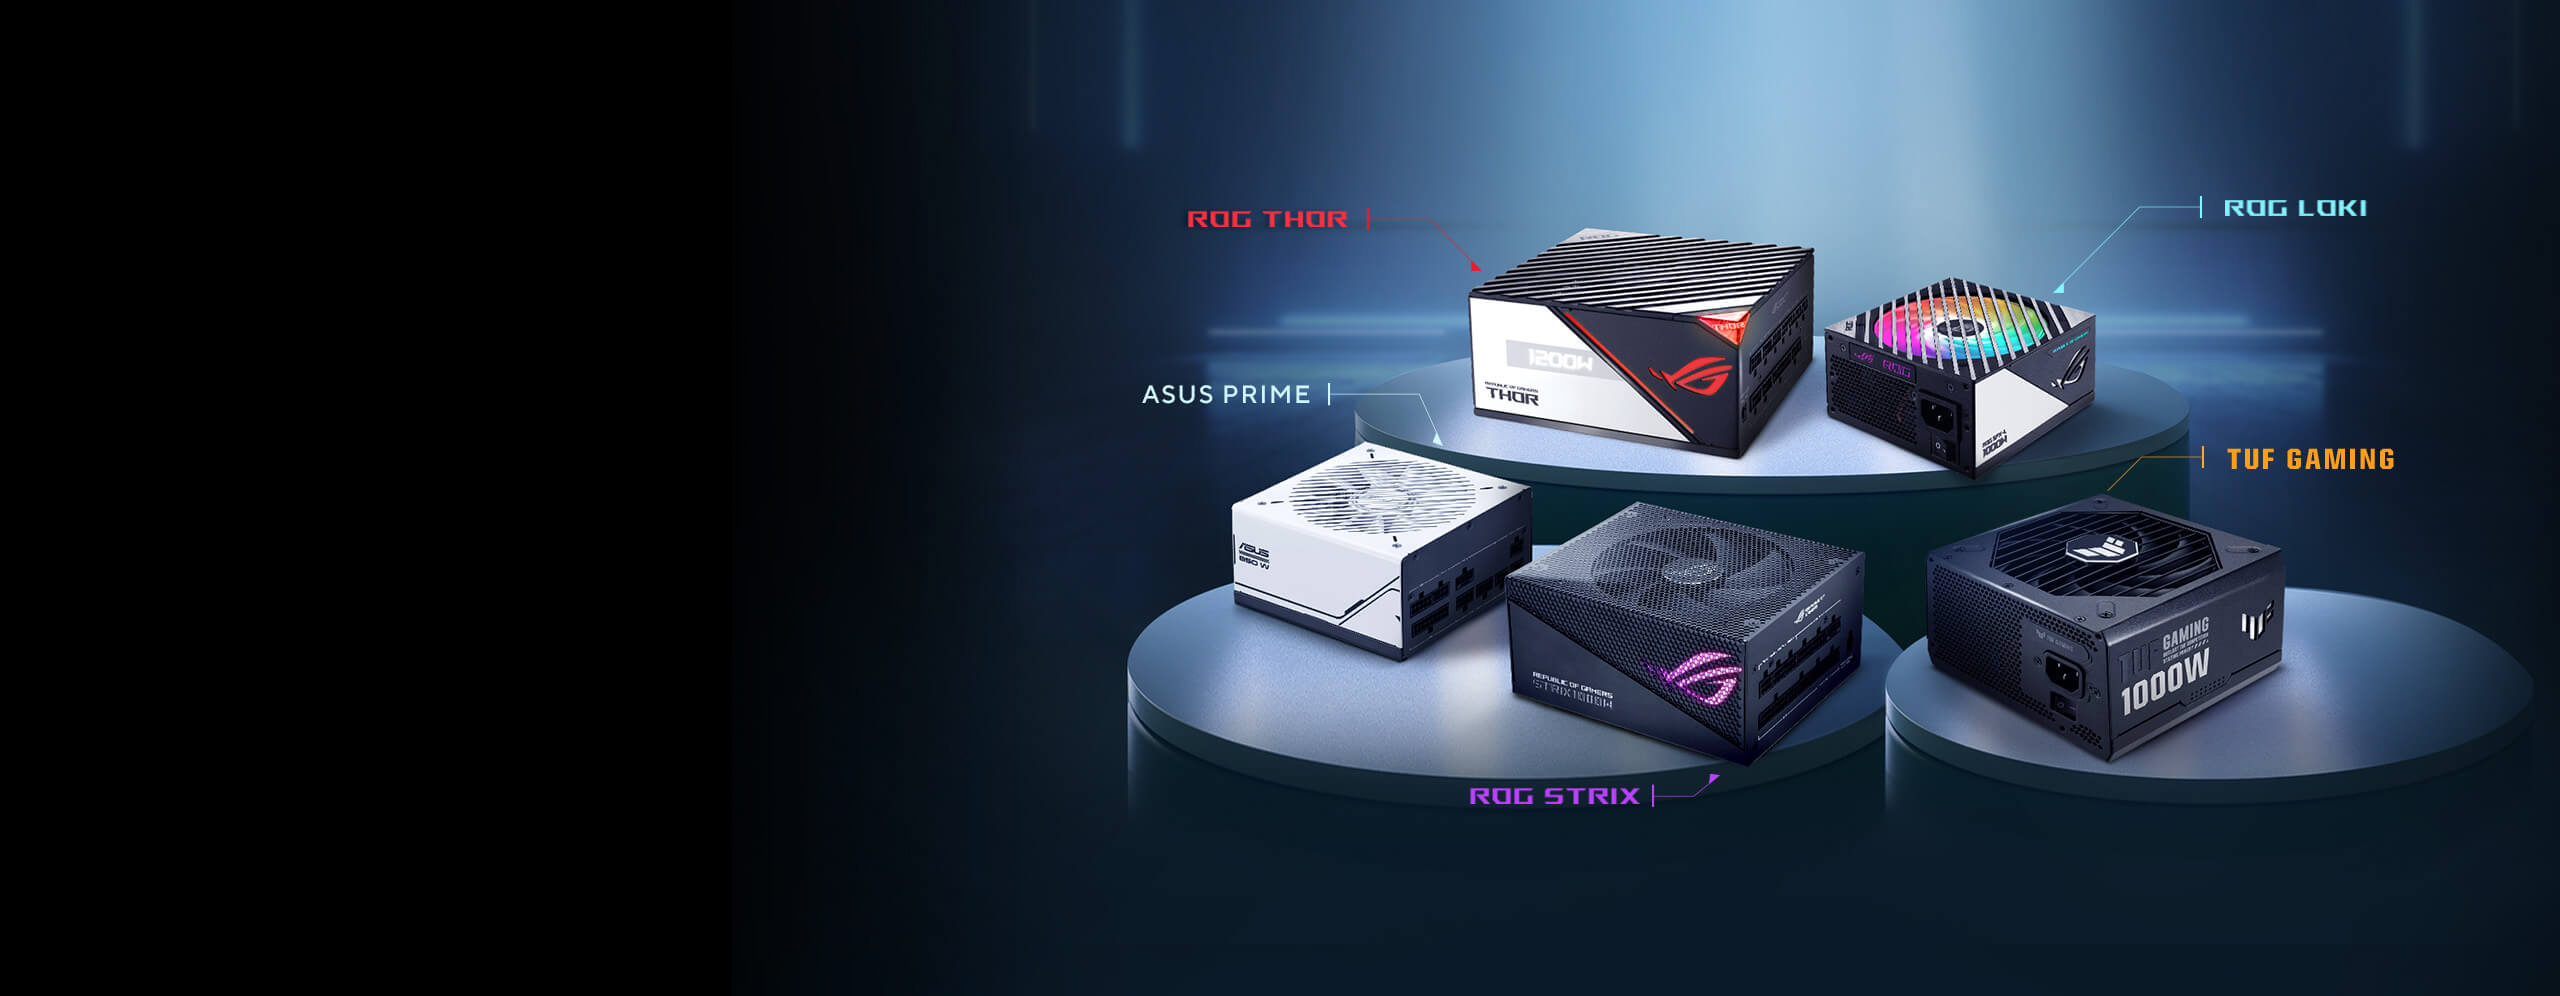 Aanbevolen voedingen voor de AMD Radeon™ RX 7900 XTX videokaart